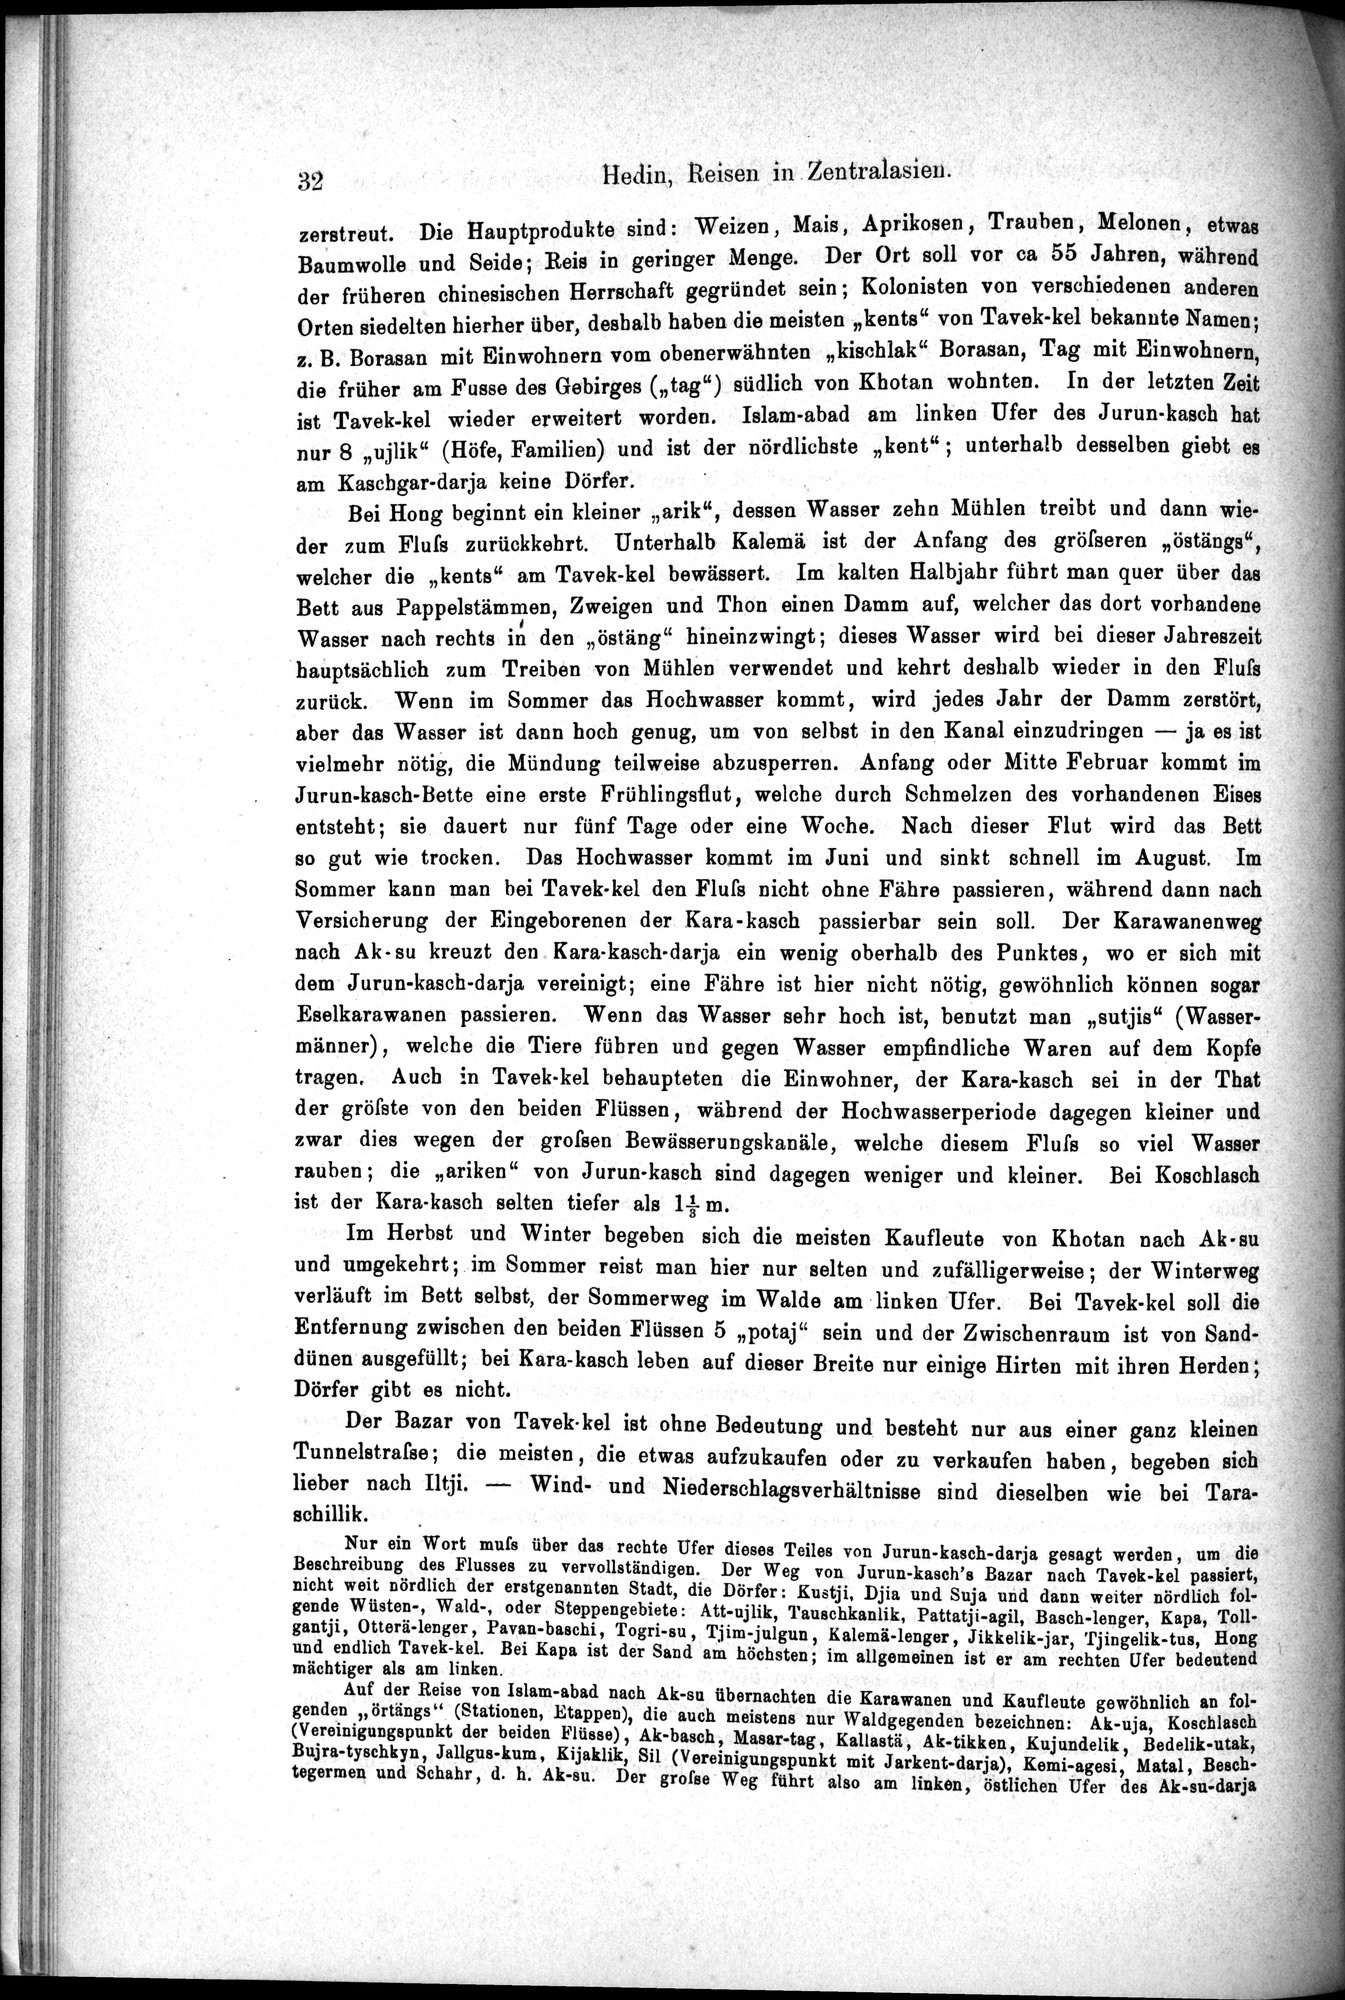 Die Geographische-Wissenschaftlichen Ergebnisse meiner Reisen in Zentralasien, 1894-1897 : vol.1 / Page 44 (Grayscale High Resolution Image)